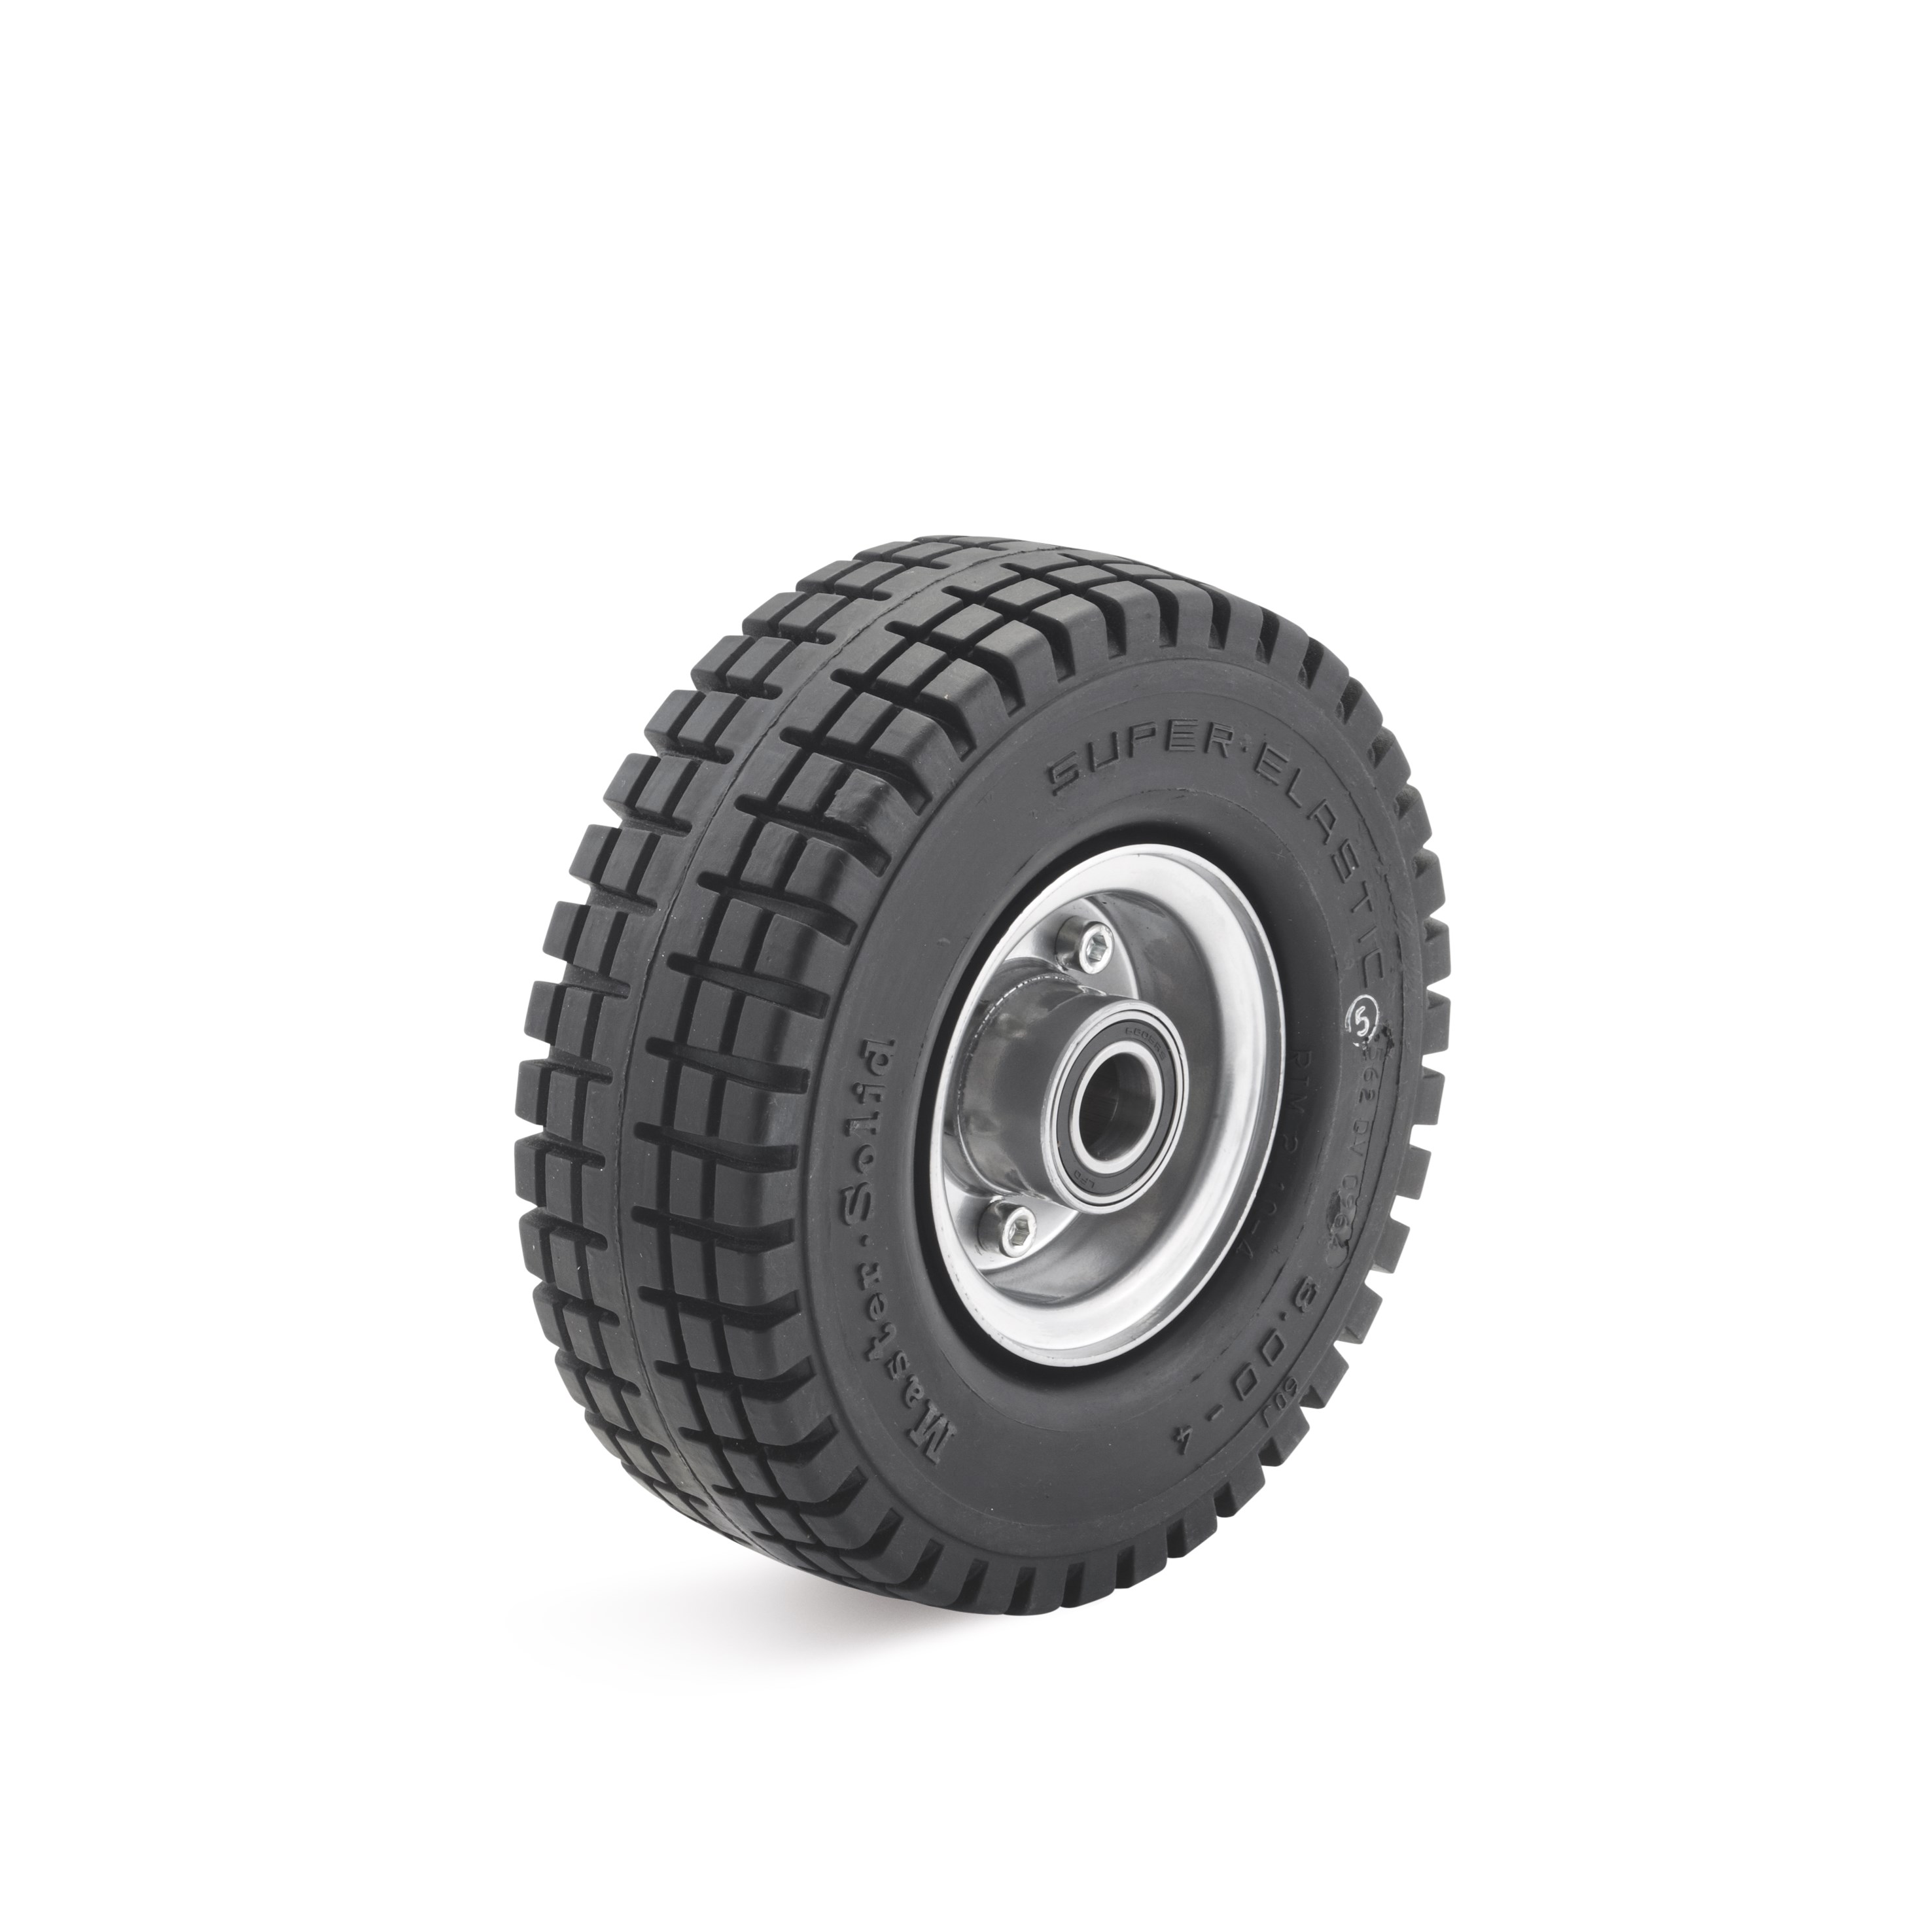 Super elastic wheel, on sheet steel care, 3-component tires SEV-3.00-4-100-K25